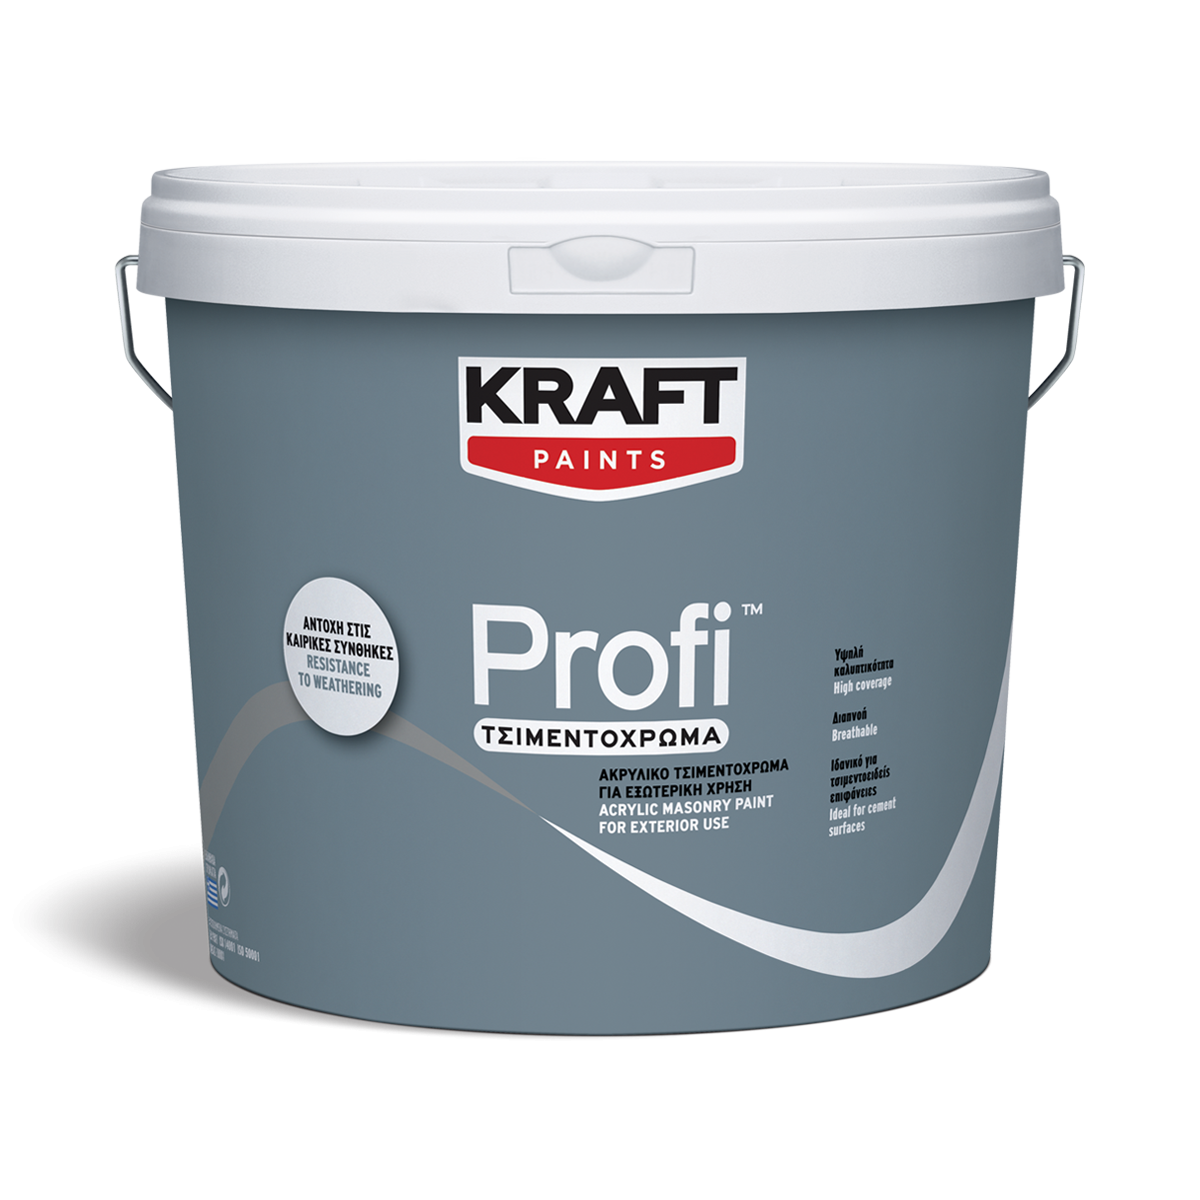 Ακρυλικό Τσιμεντόχρωμα Profi- Kraft Paints "Κεραμιδί" 9L